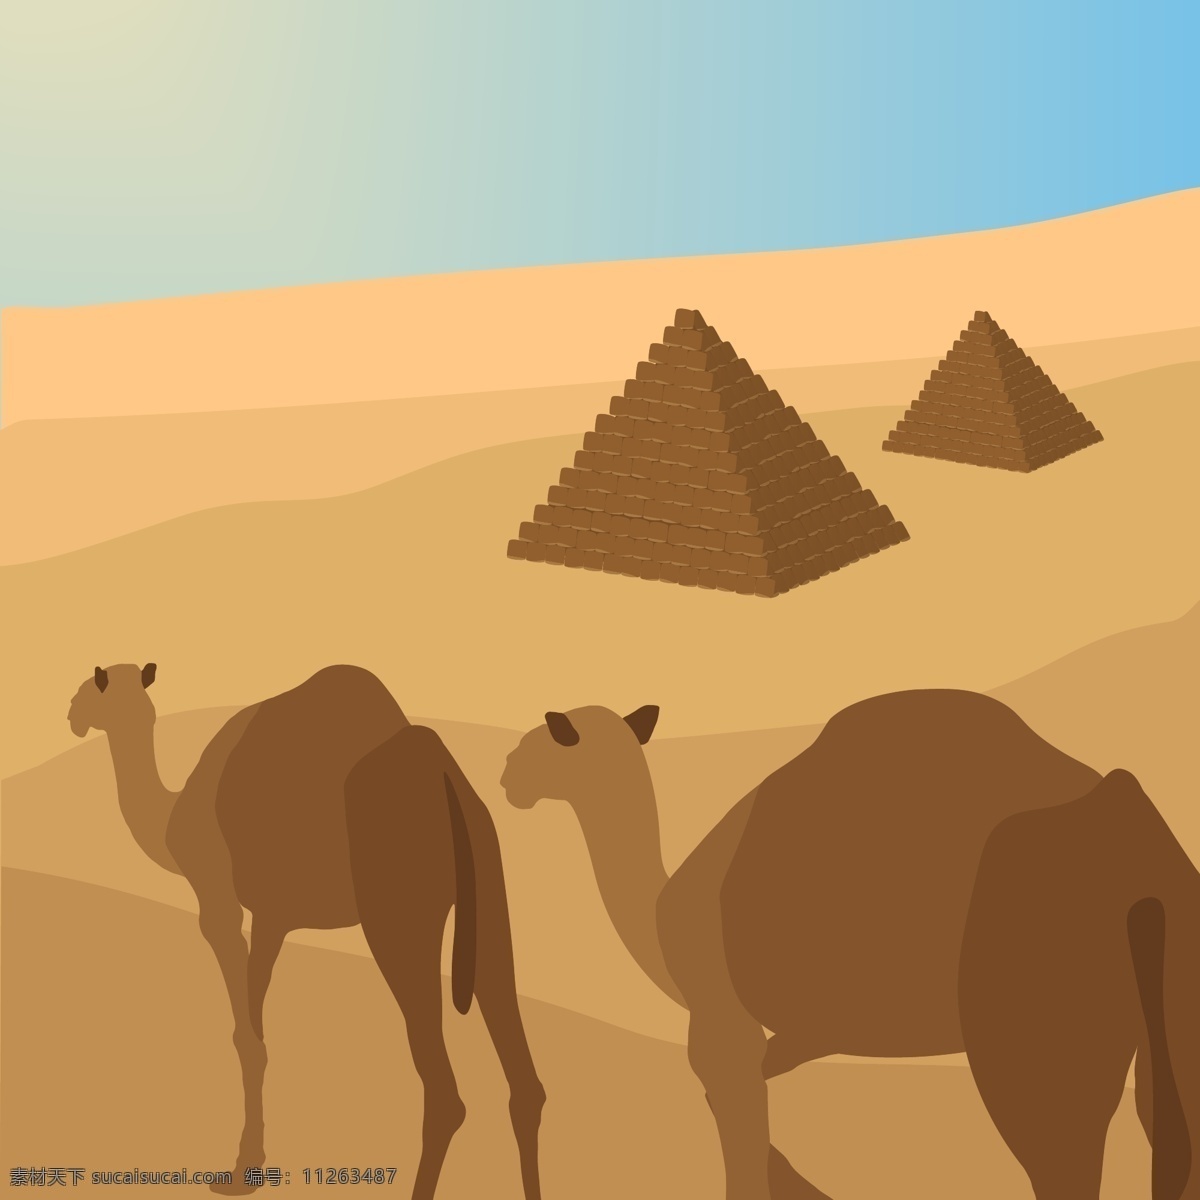 金字塔与骆驼 旅行 动物 太阳 景观 平面 建筑 平面设计 非洲 旅游 沙漠 埃及 历史 文化 砂 金字塔 阿拉伯 骆驼 古董 自然景观 人文景观